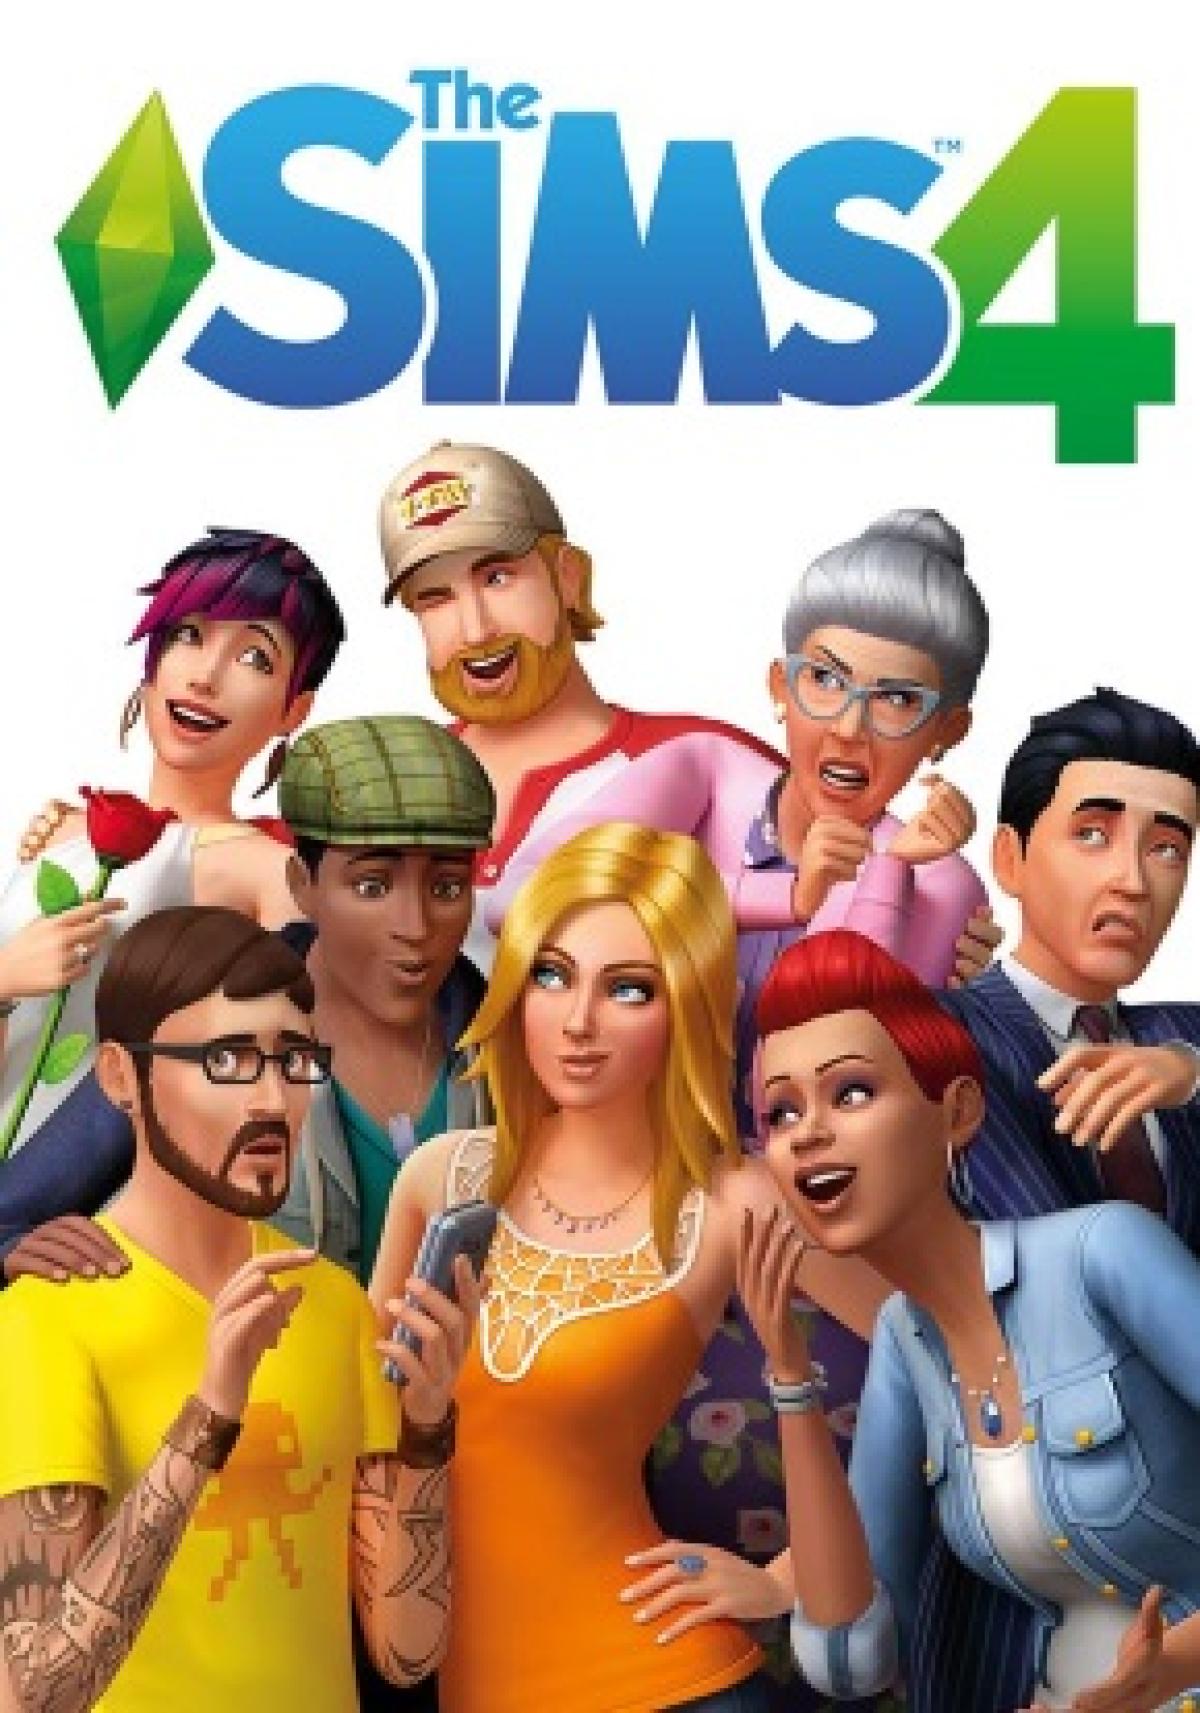 Los 20 Mejores Mods De Los Sims 4 En 2020 Romances Apasionados Escenas 18 Extension De Trucos Hobbyconsolas